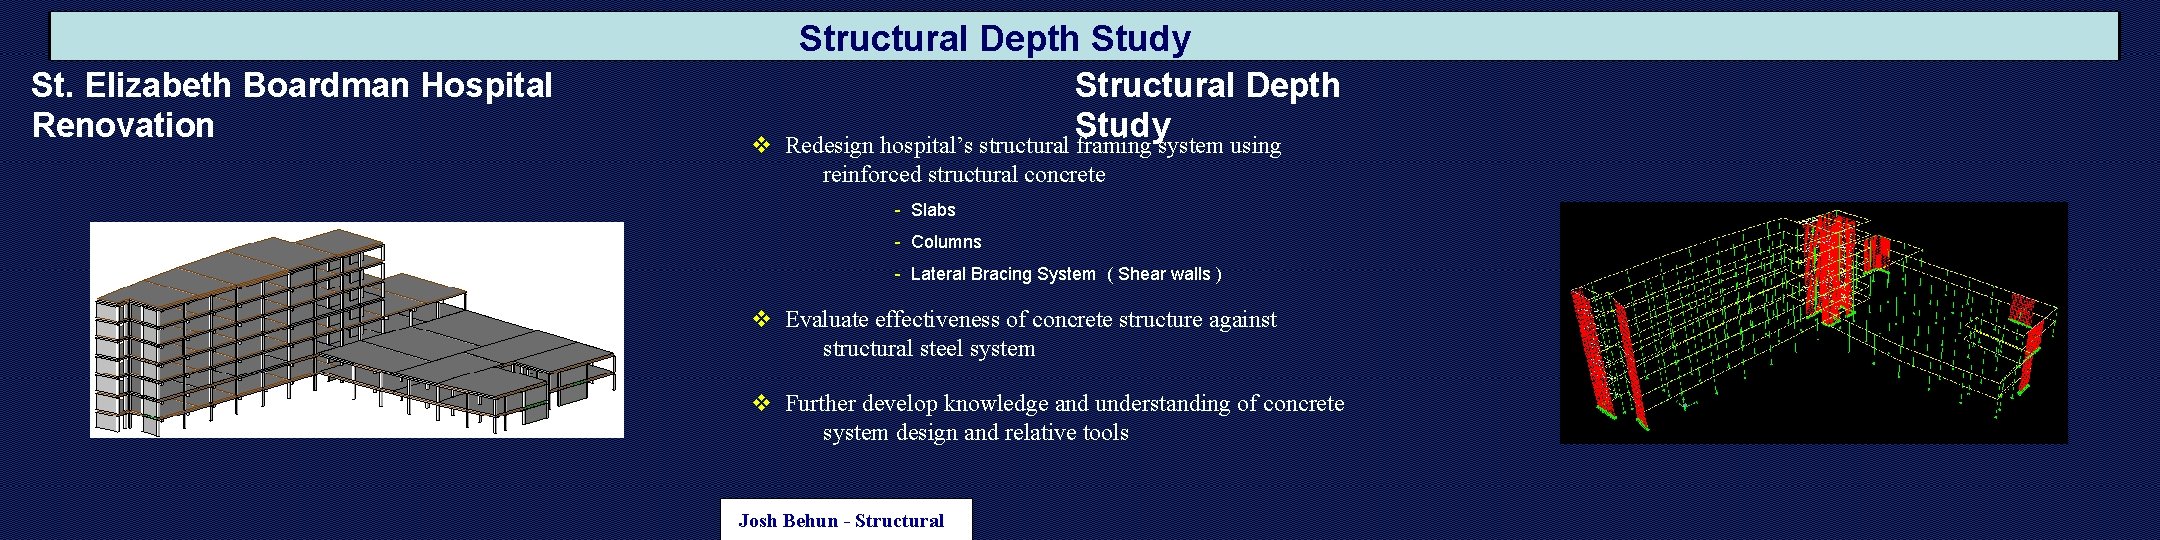 Structural Depth Study St. Elizabeth Boardman Hospital Renovation v Structural Depth Study Redesign hospital’s